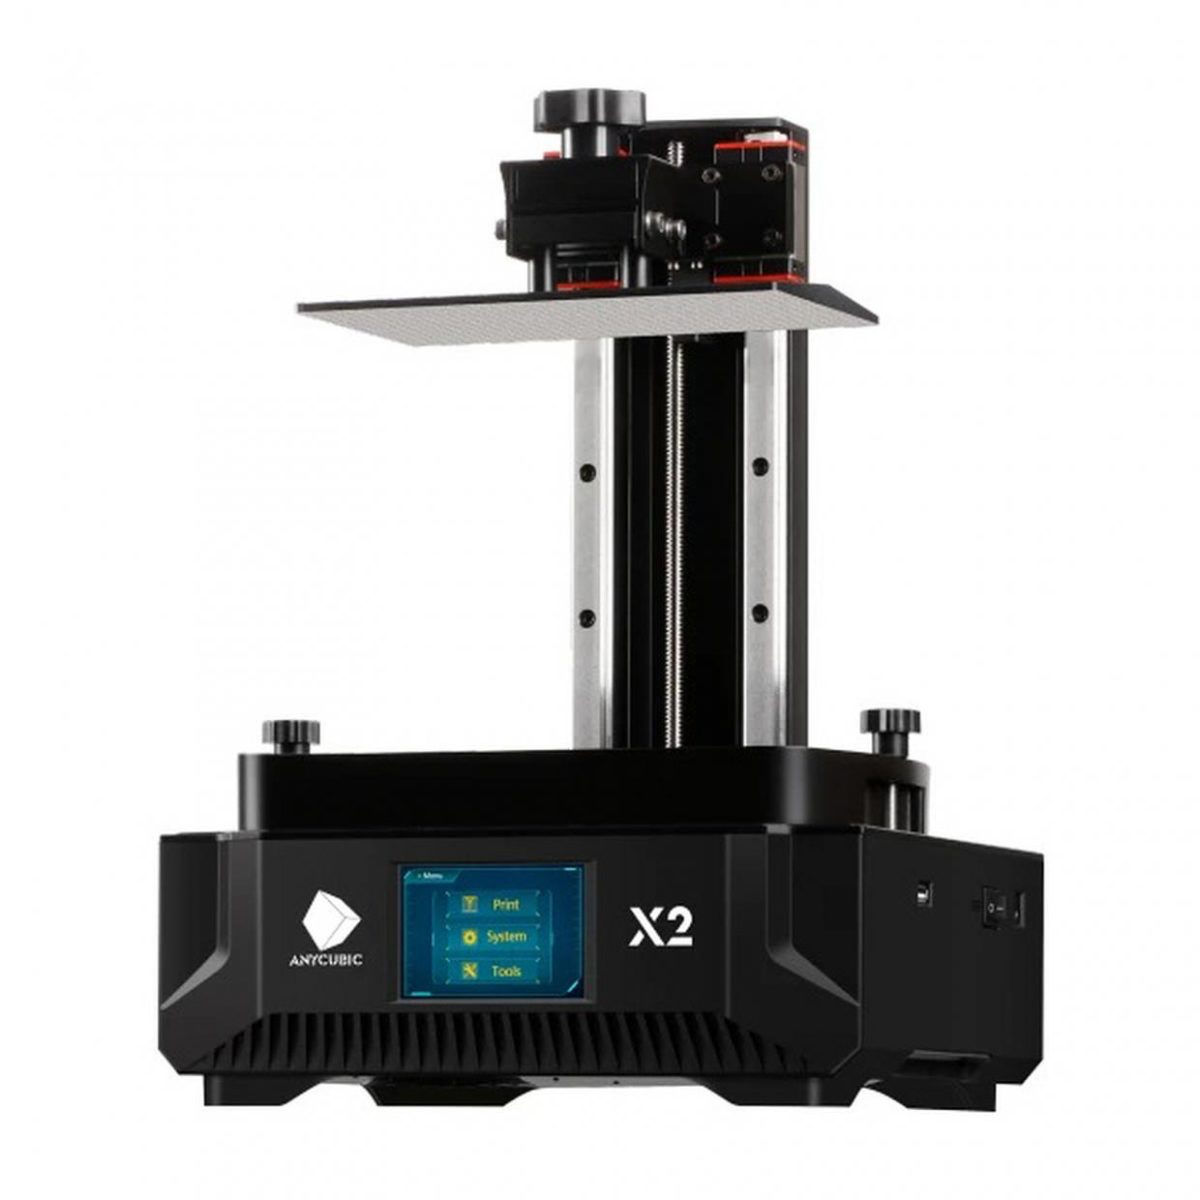 Imprimante 3D Anycubic Photon Mono X2 disponible chez Aytoo